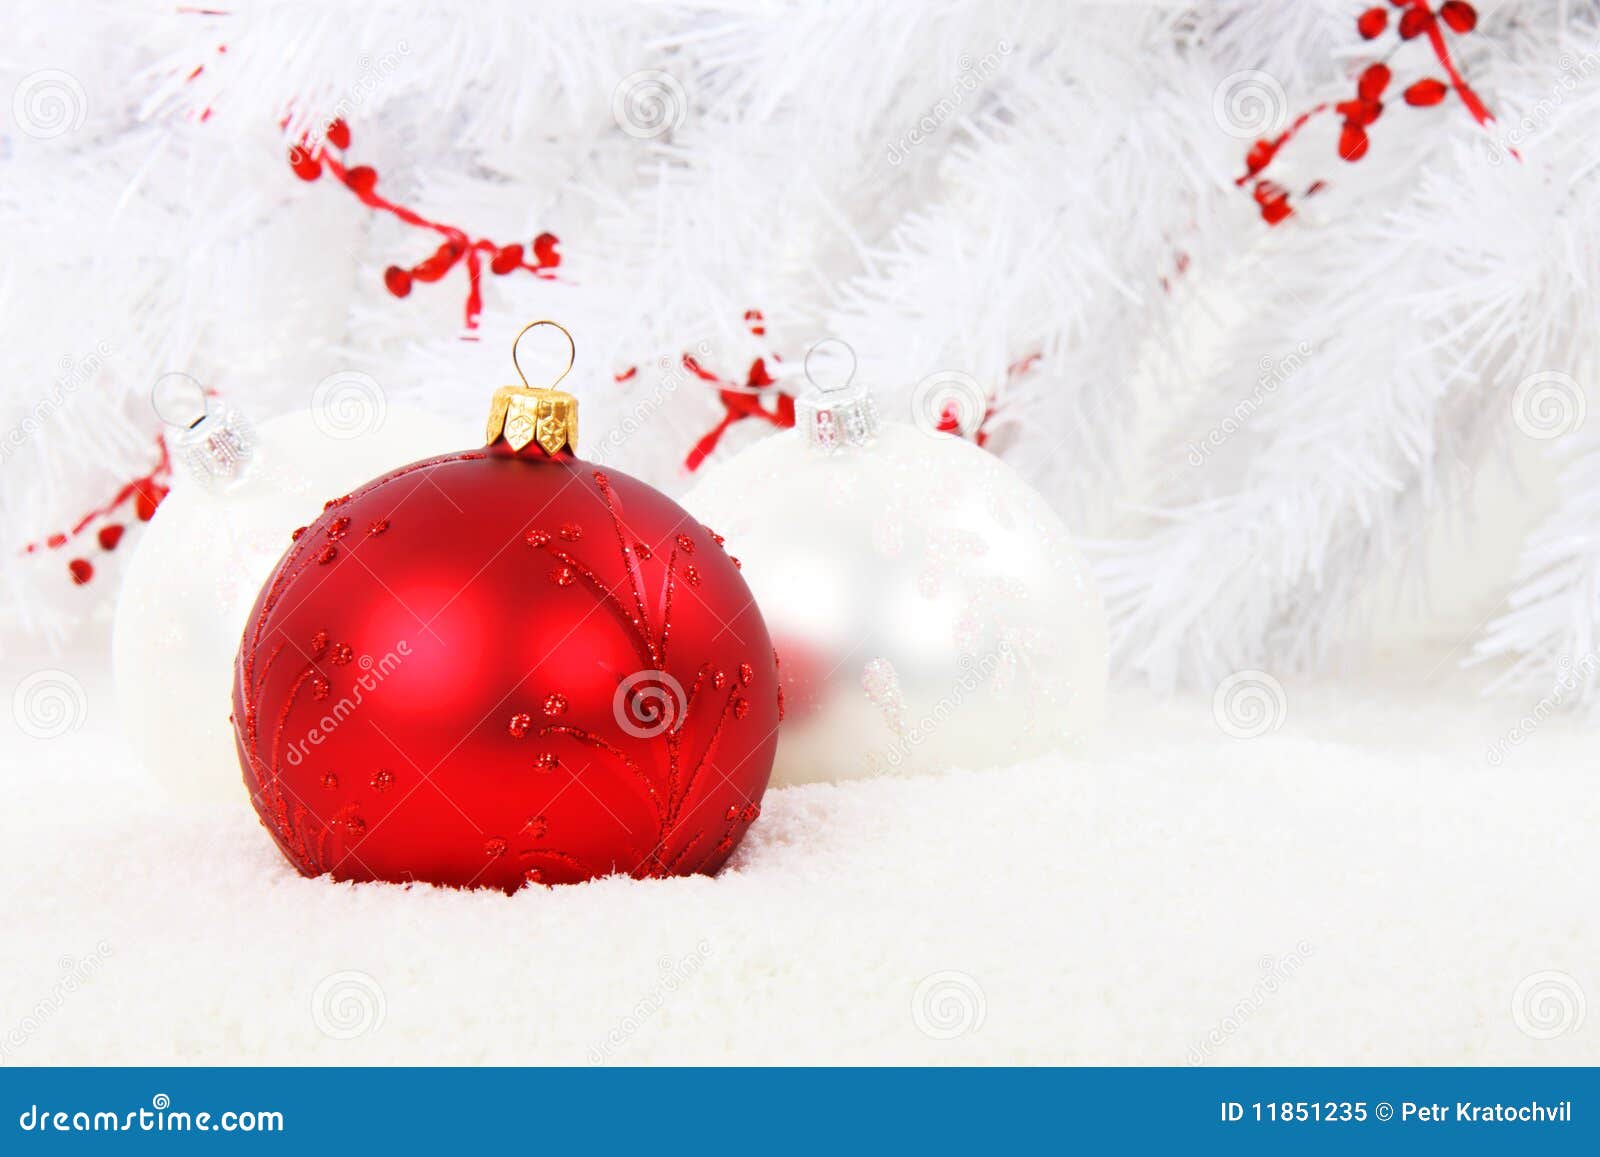 Bagattella rossa di natale con le sfere bianche in neve. Bagattella rossa di natale con le sfere di natale bianco ed albero bianco nei precedenti